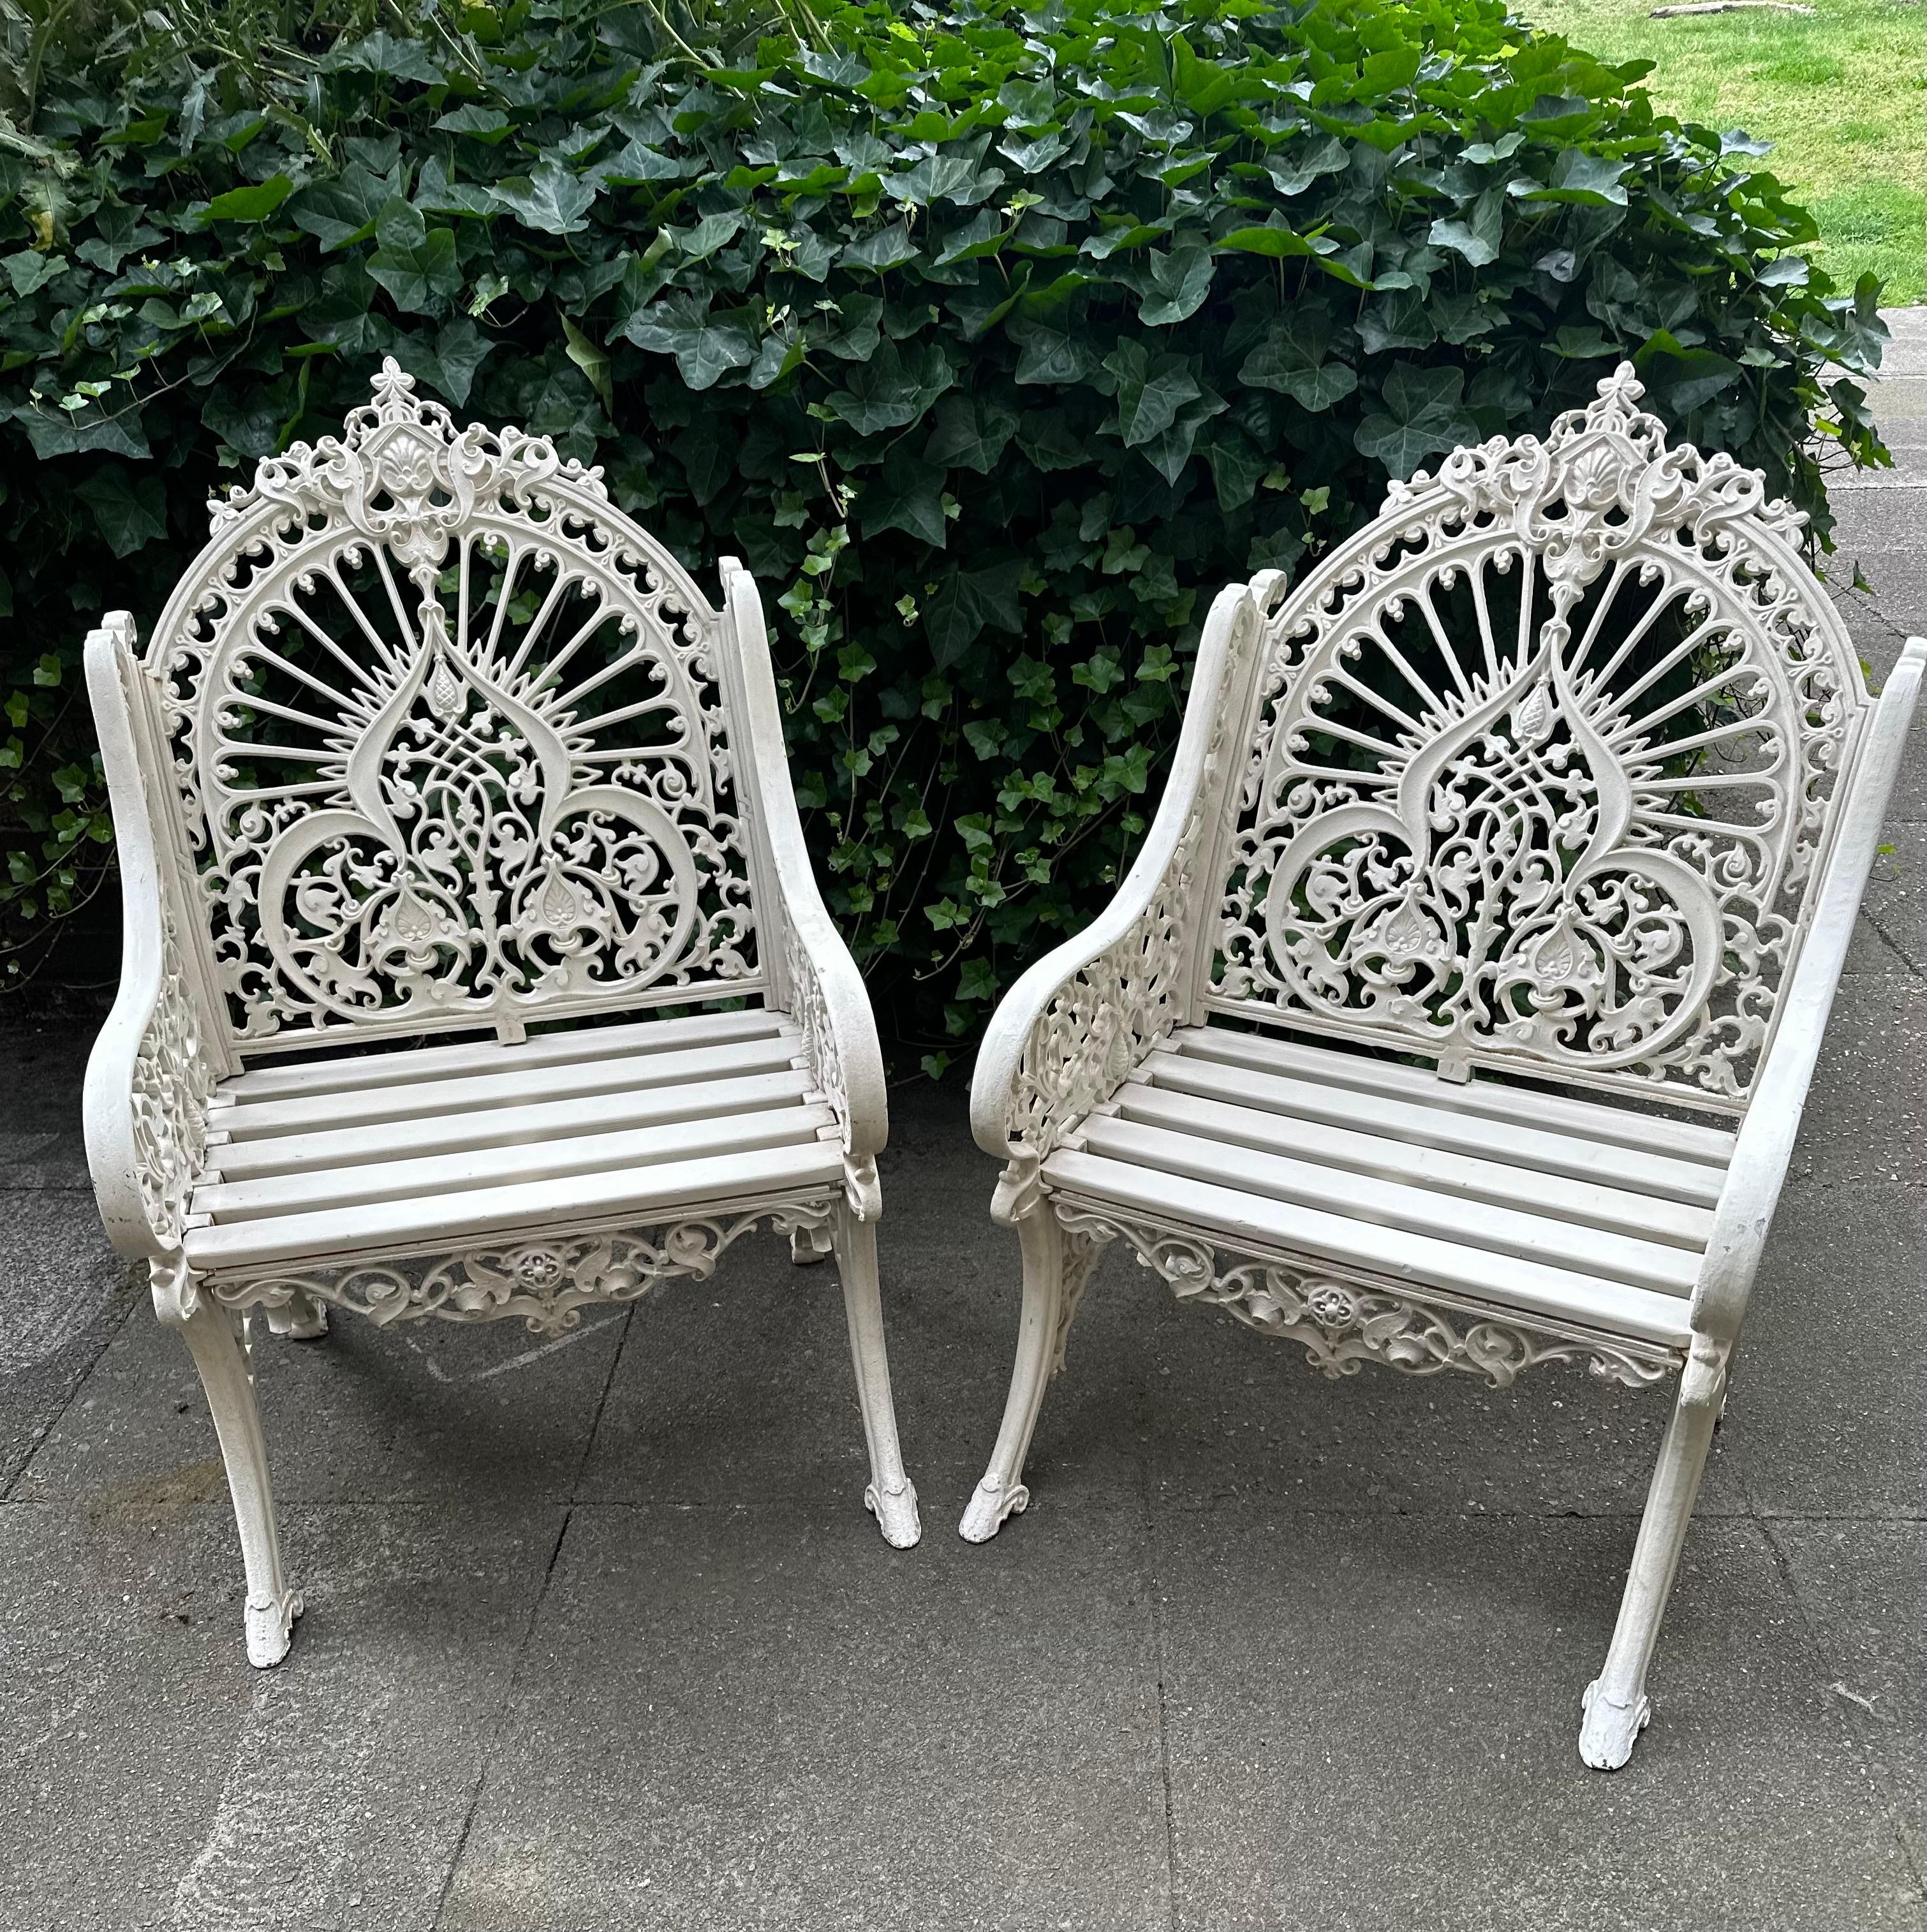 Merveilleuse et rare paire de chaises Coalbrookdale d'origine en fonte avec des sièges à lattes en bois et peintes en blanc. Ils possèdent une marque de dessin ou modèle 90928 enregistrée pour la première fois en 1853 sous le nom de 